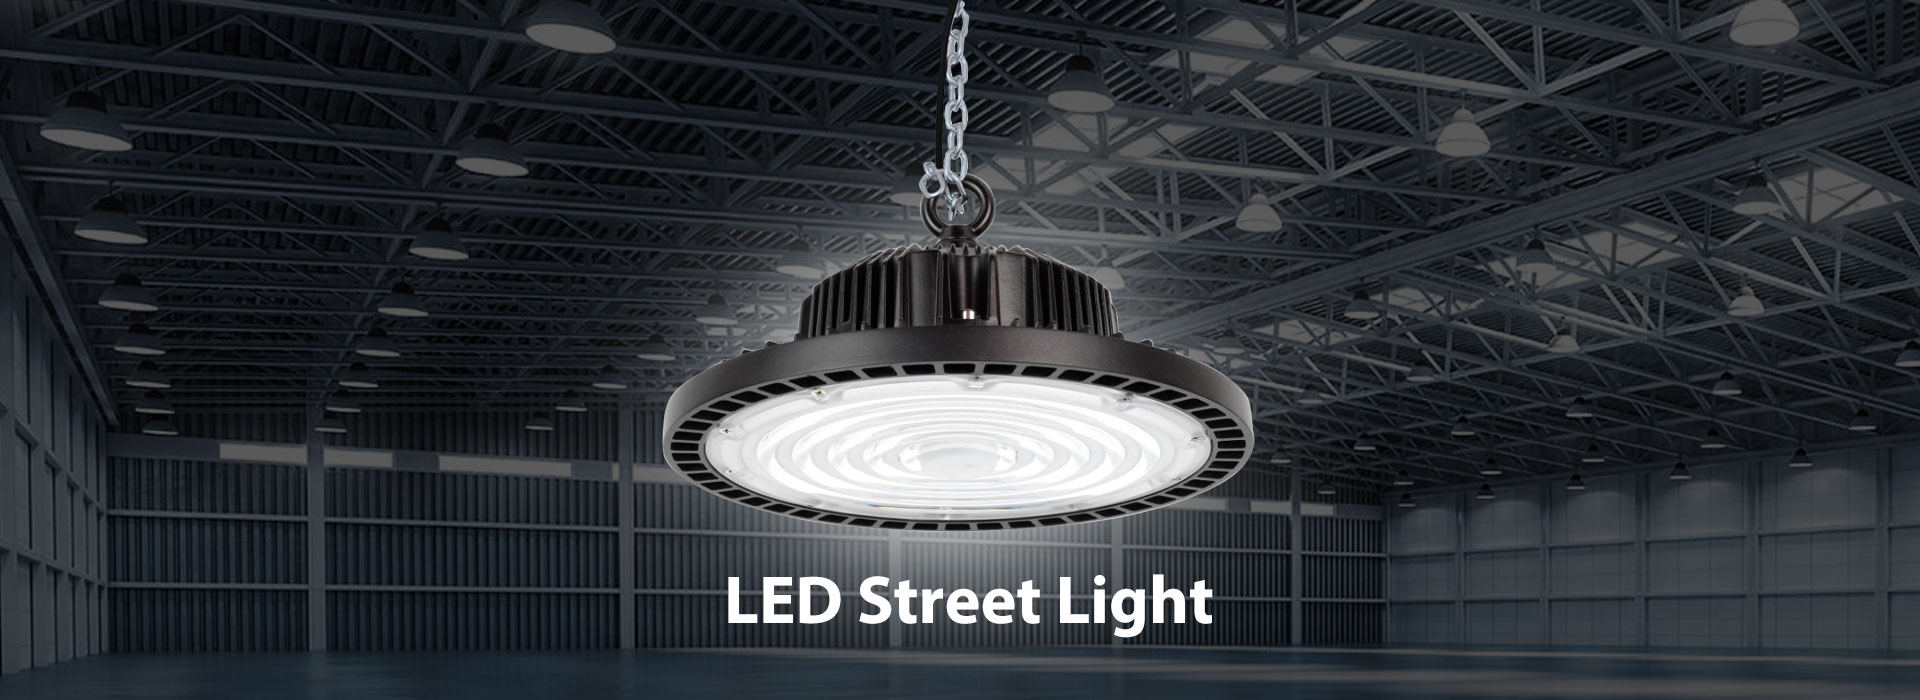 Hiina LED-tänavavalgustite tehas